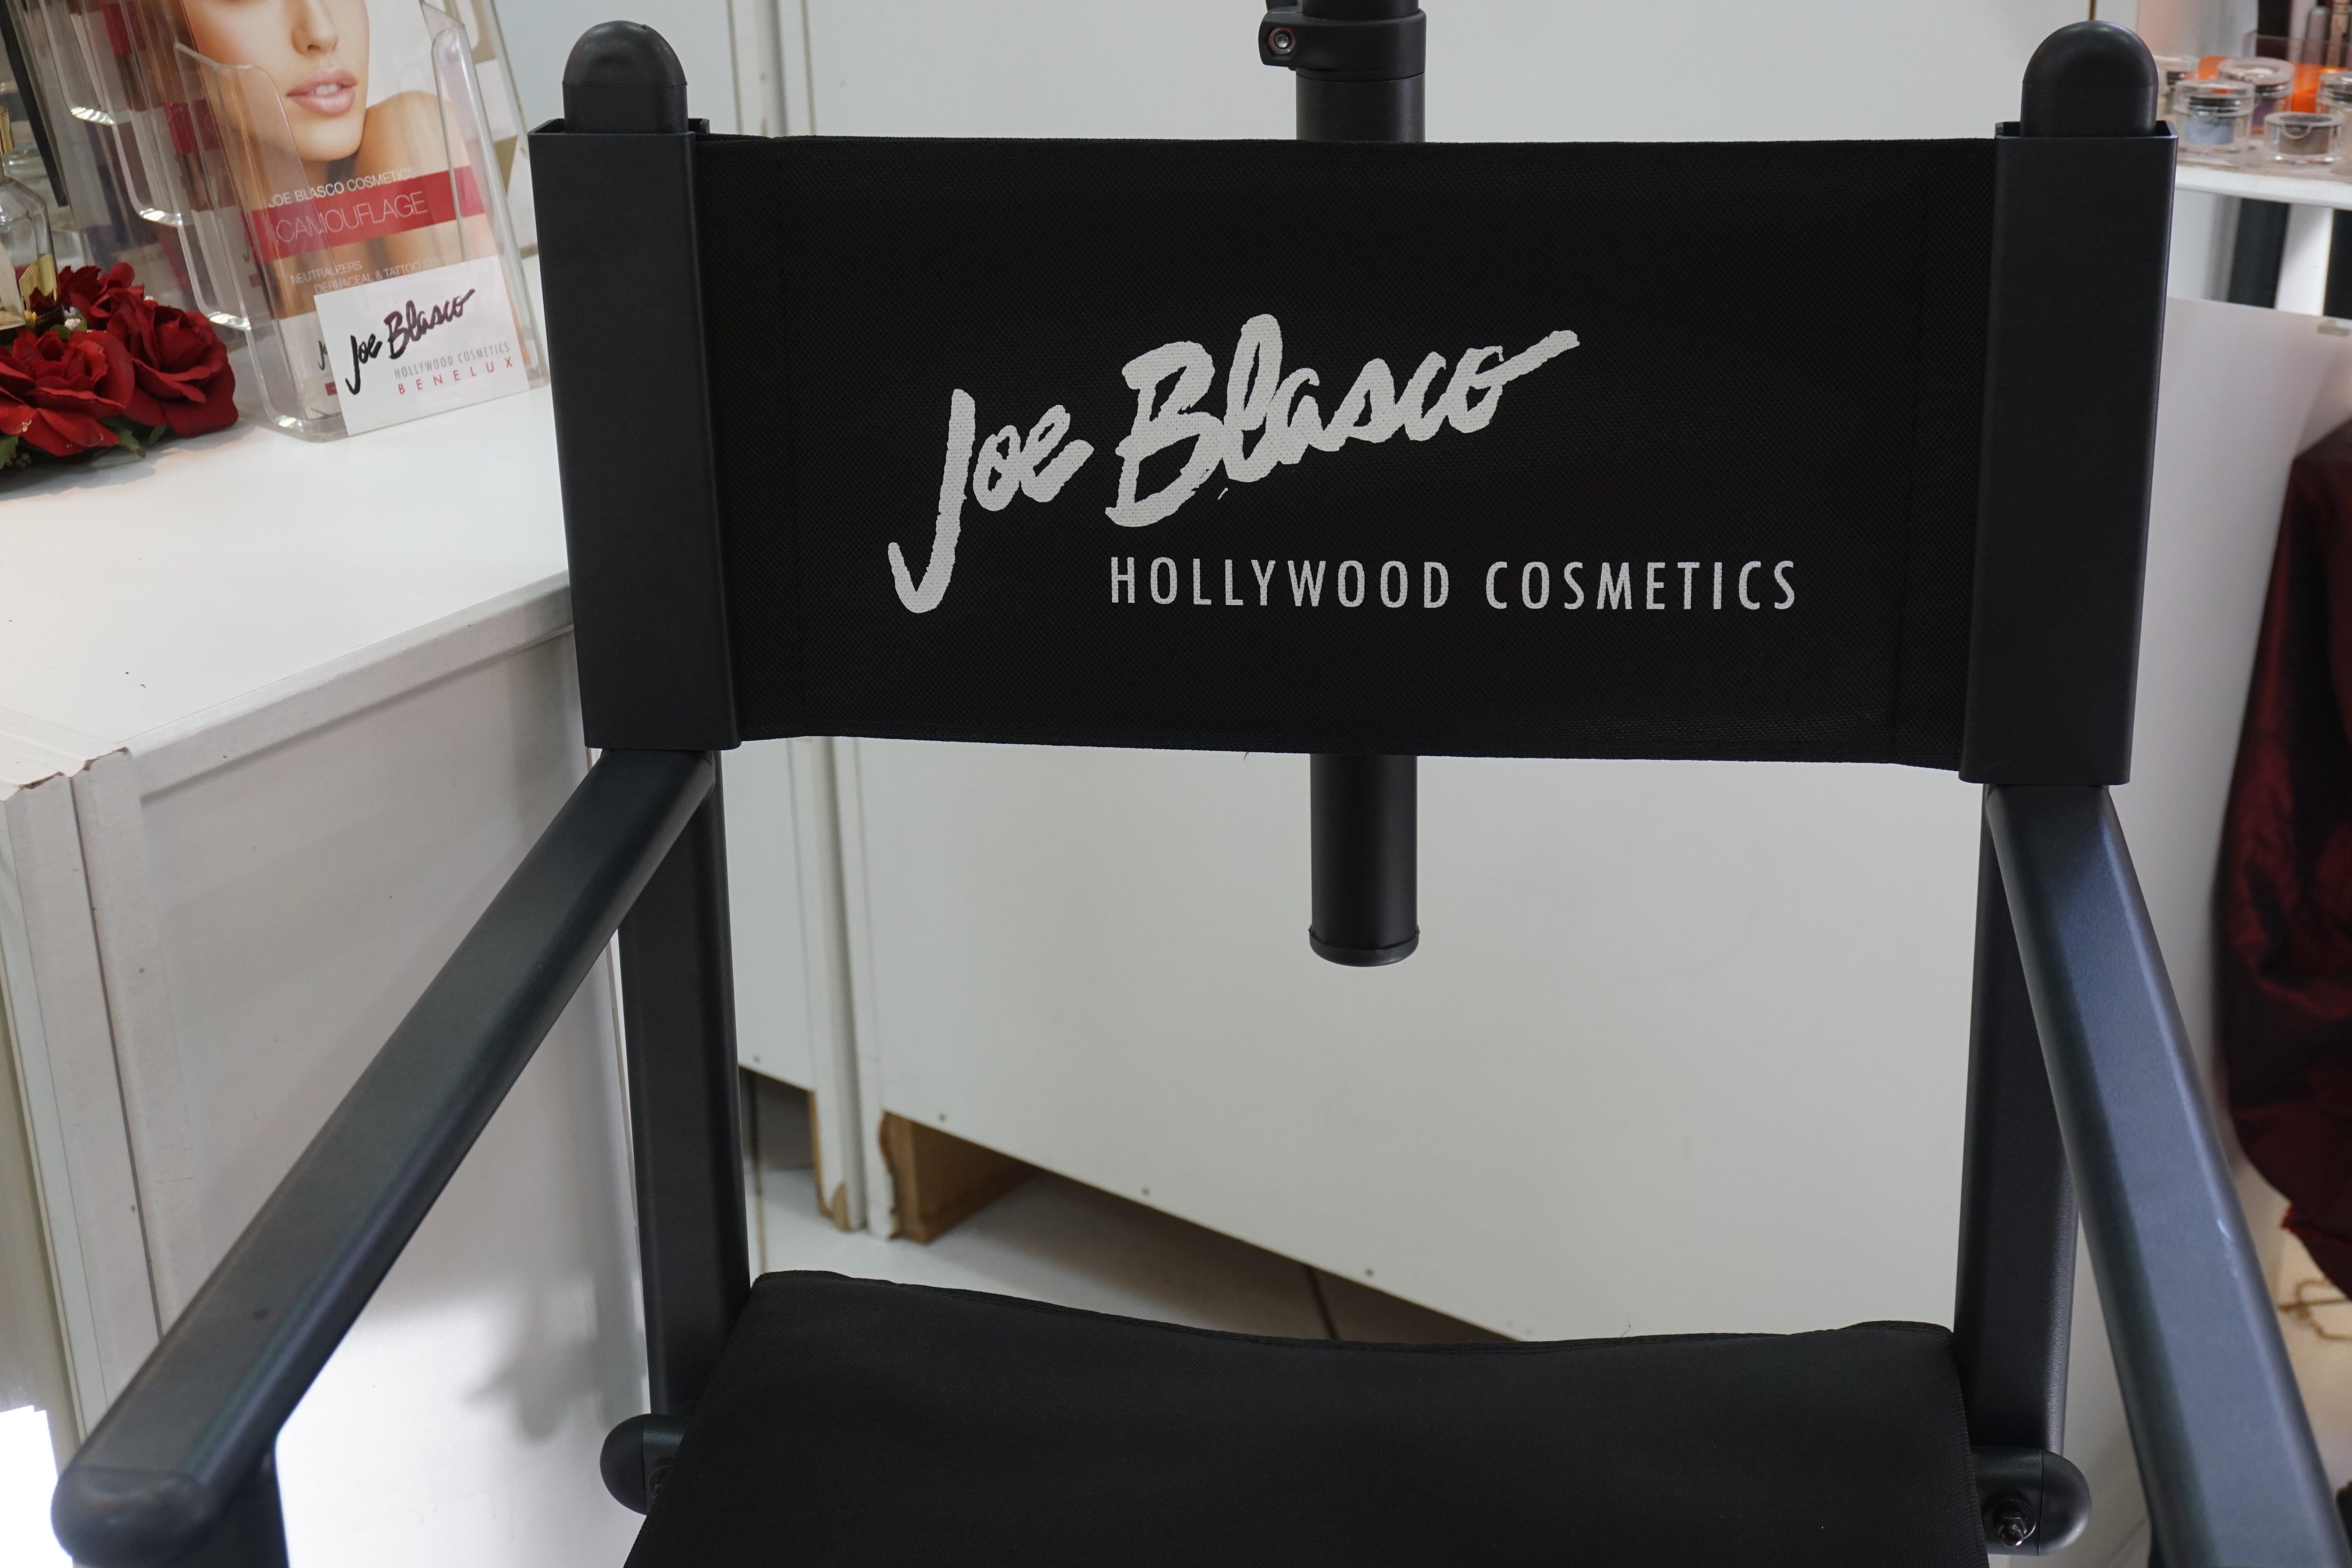 Je bekijkt nu Make-Up Artist Joe Blasco